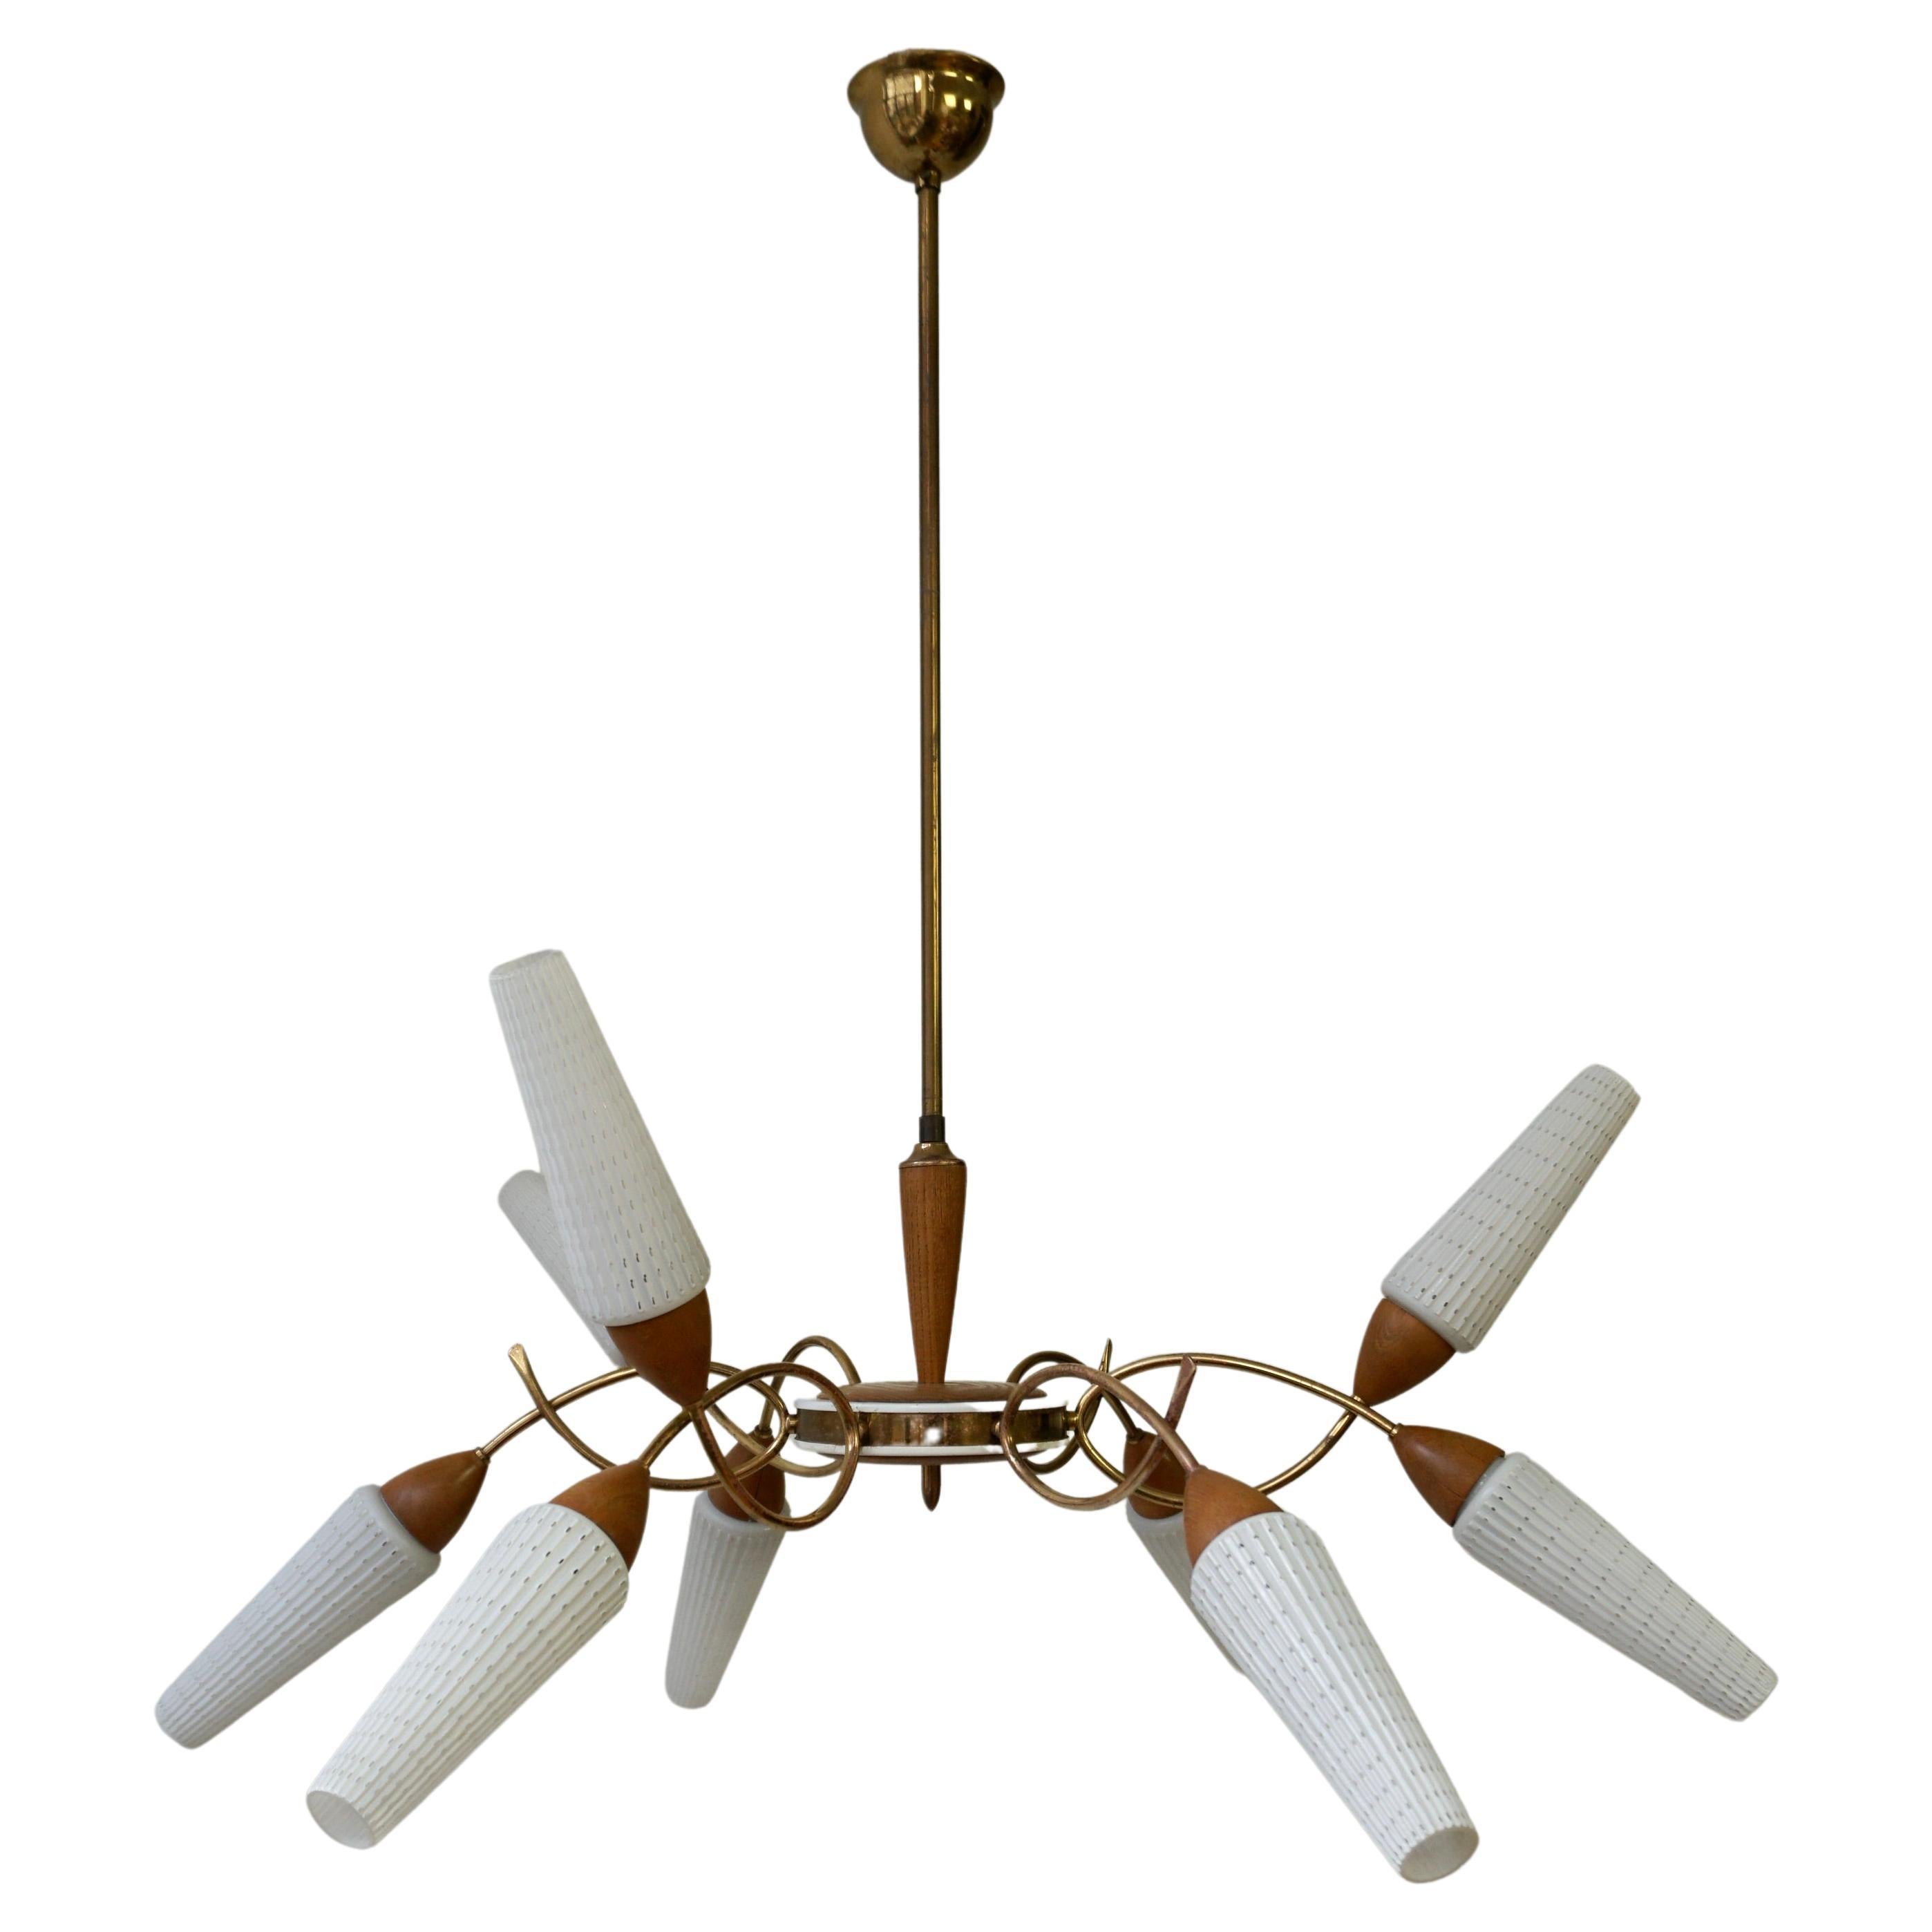 Diese außergewöhnliche 1950er Mid-Century Modernist Spinne neun-Licht italienische Sputnik-Kronleuchter Pendelleuchte ist aus einem Messing und Holzrahmen und Opalglas Tulpe Schirme gemacht.  
Hergestellt in Italien, um 1950.

Die Leuchte hat neun